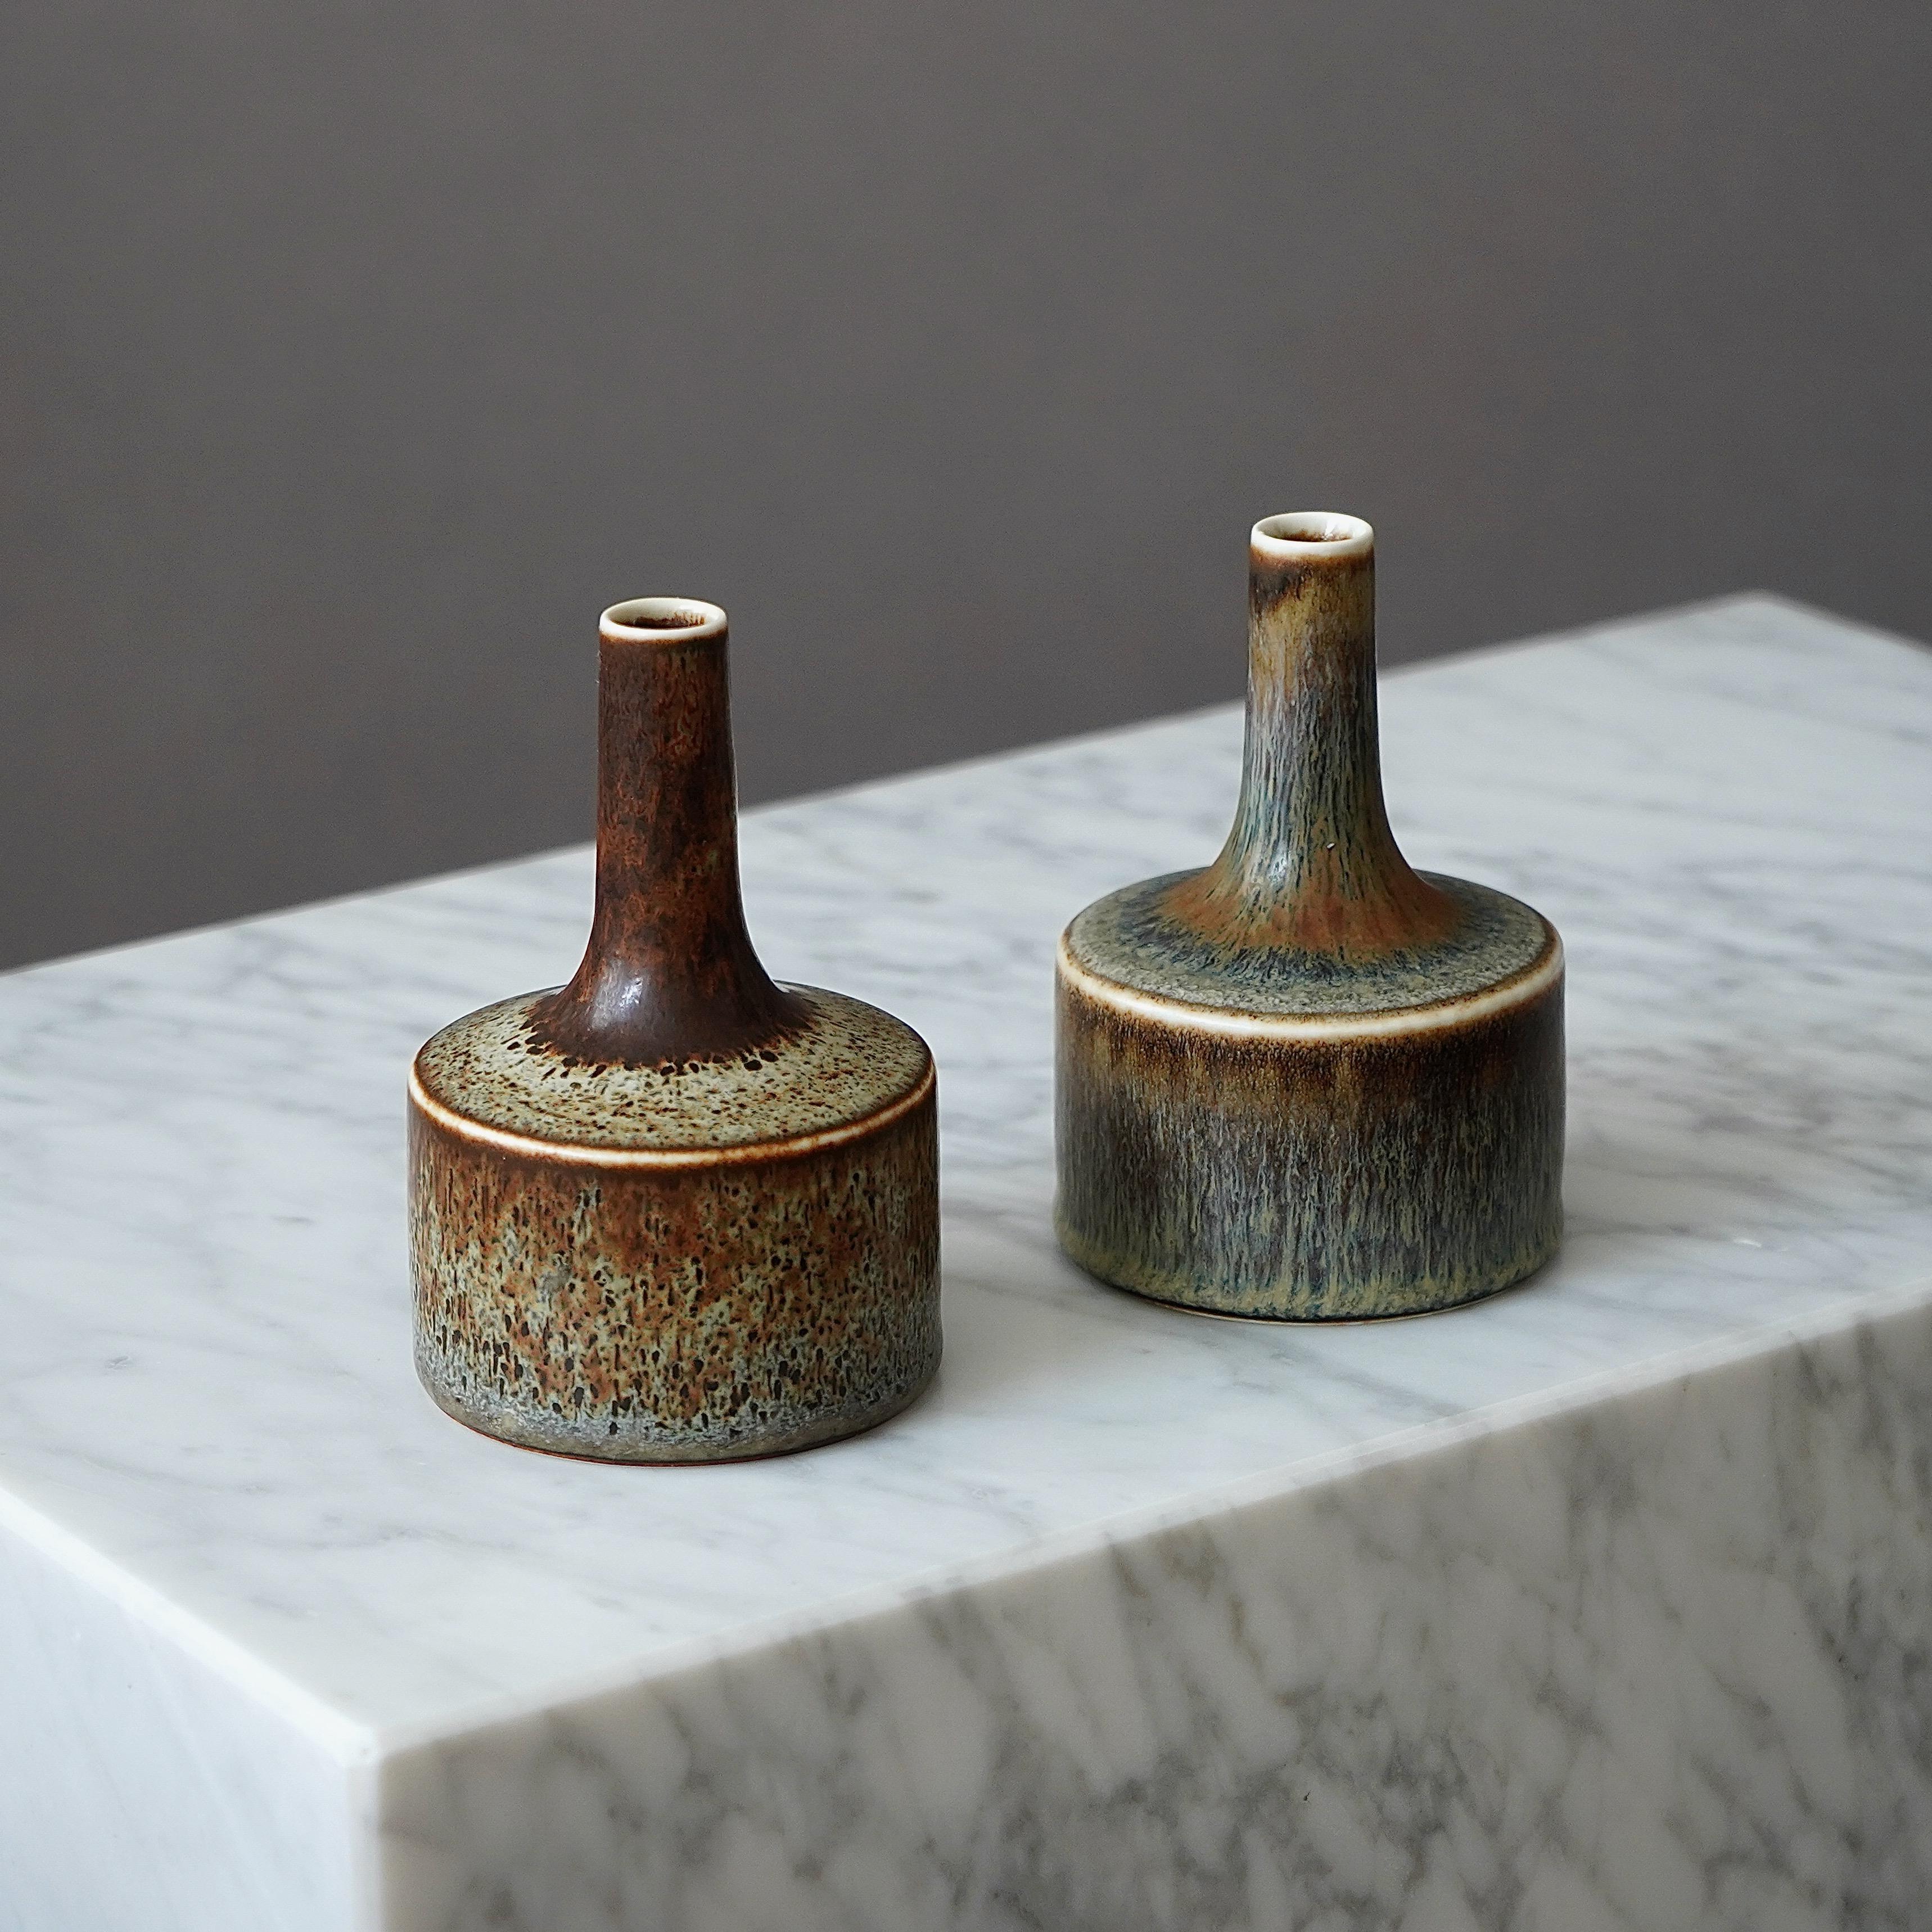 Set oder 2 schöne Vasen aus Steingut mit erstaunlicher Glasur.
Entworfen von Carl-Harry Stålhane in Rörstrand, Schweden, 1950er Jahre.

Ausgezeichneter Zustand. Signiert 